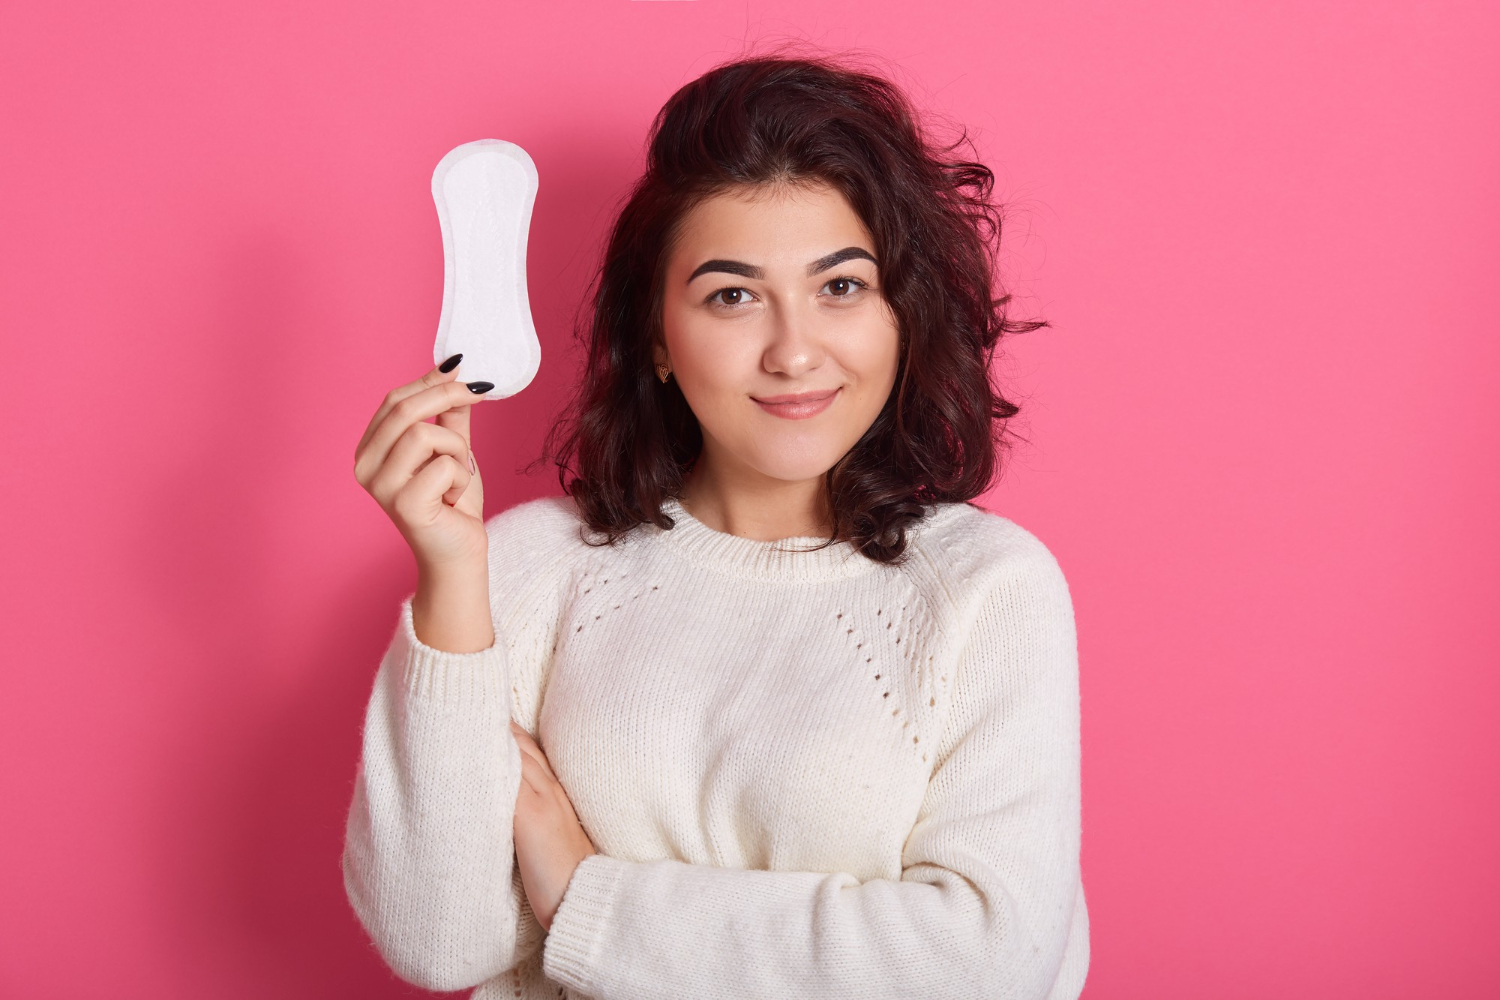 Cupa menstruala: O solutie benefica pentru igiena feminina